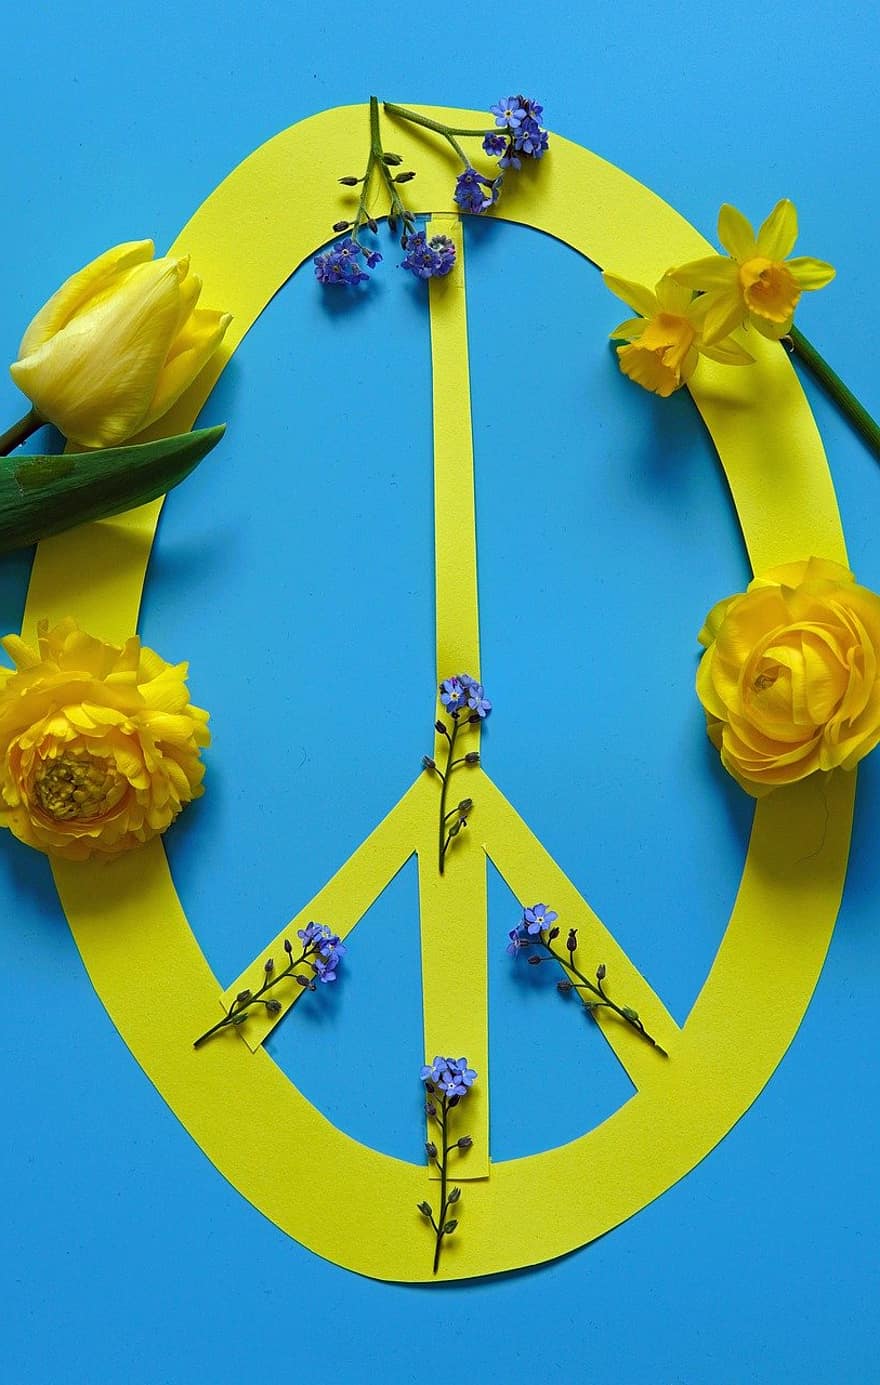 мир, знак мира, против войны, Украина, желтый синий, Украина Краски, условное обозначение, Пасха 2022, Весна 2022 г., цветок, Цветущая